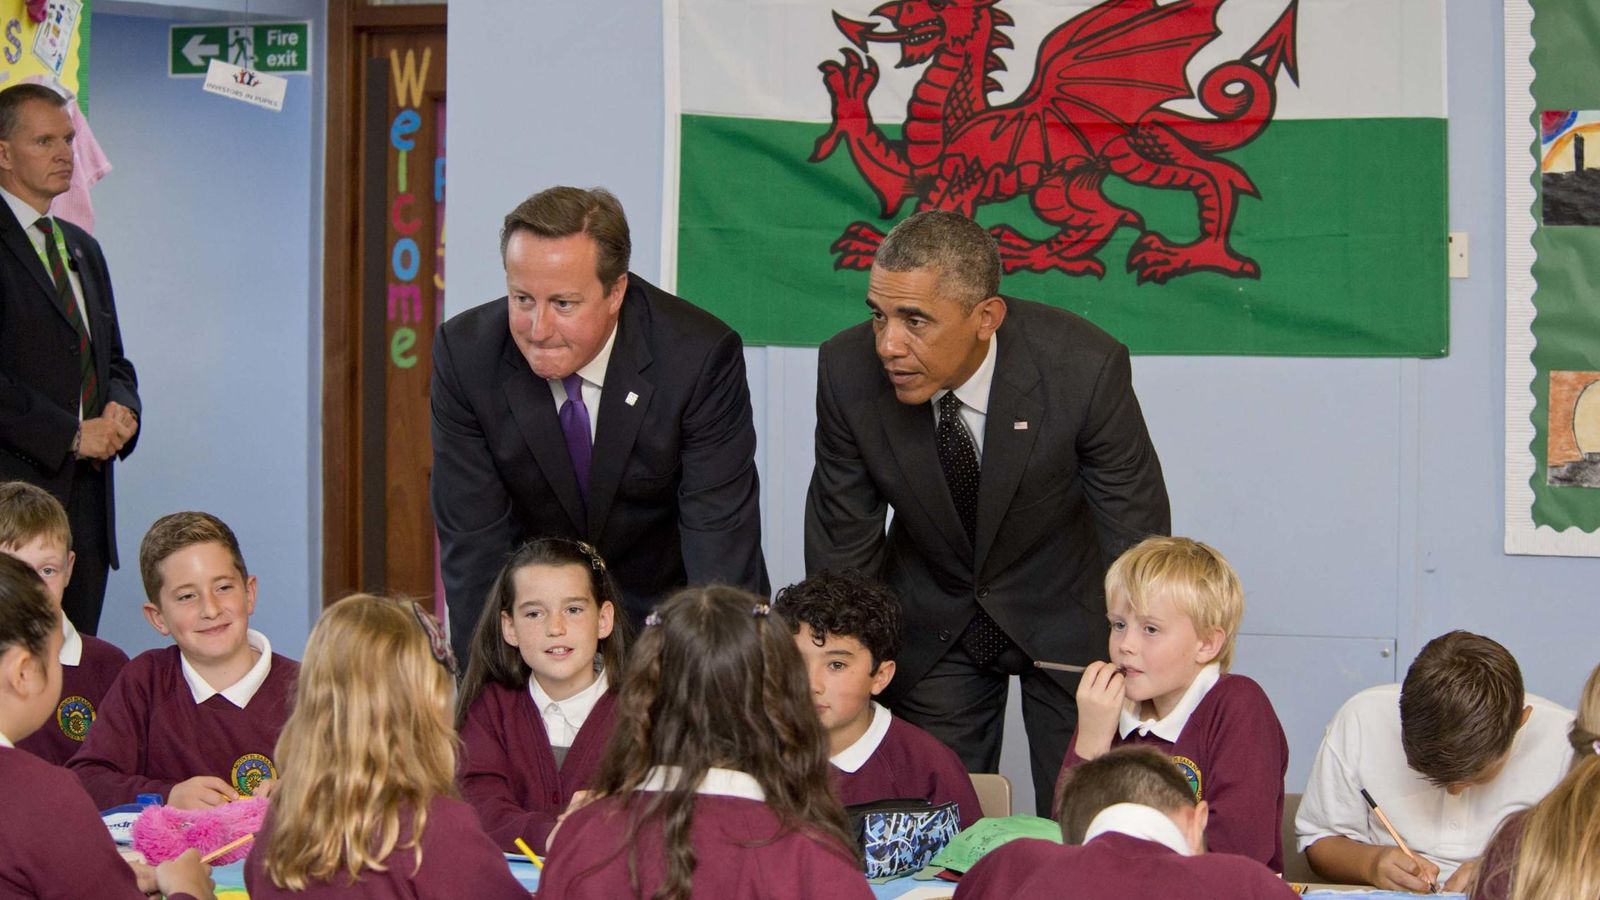 Foto: El primer ministro británico, David Cameron, y el presidente estadounidense, Barack Obama, visitan una escuela en Gales. (GTres)